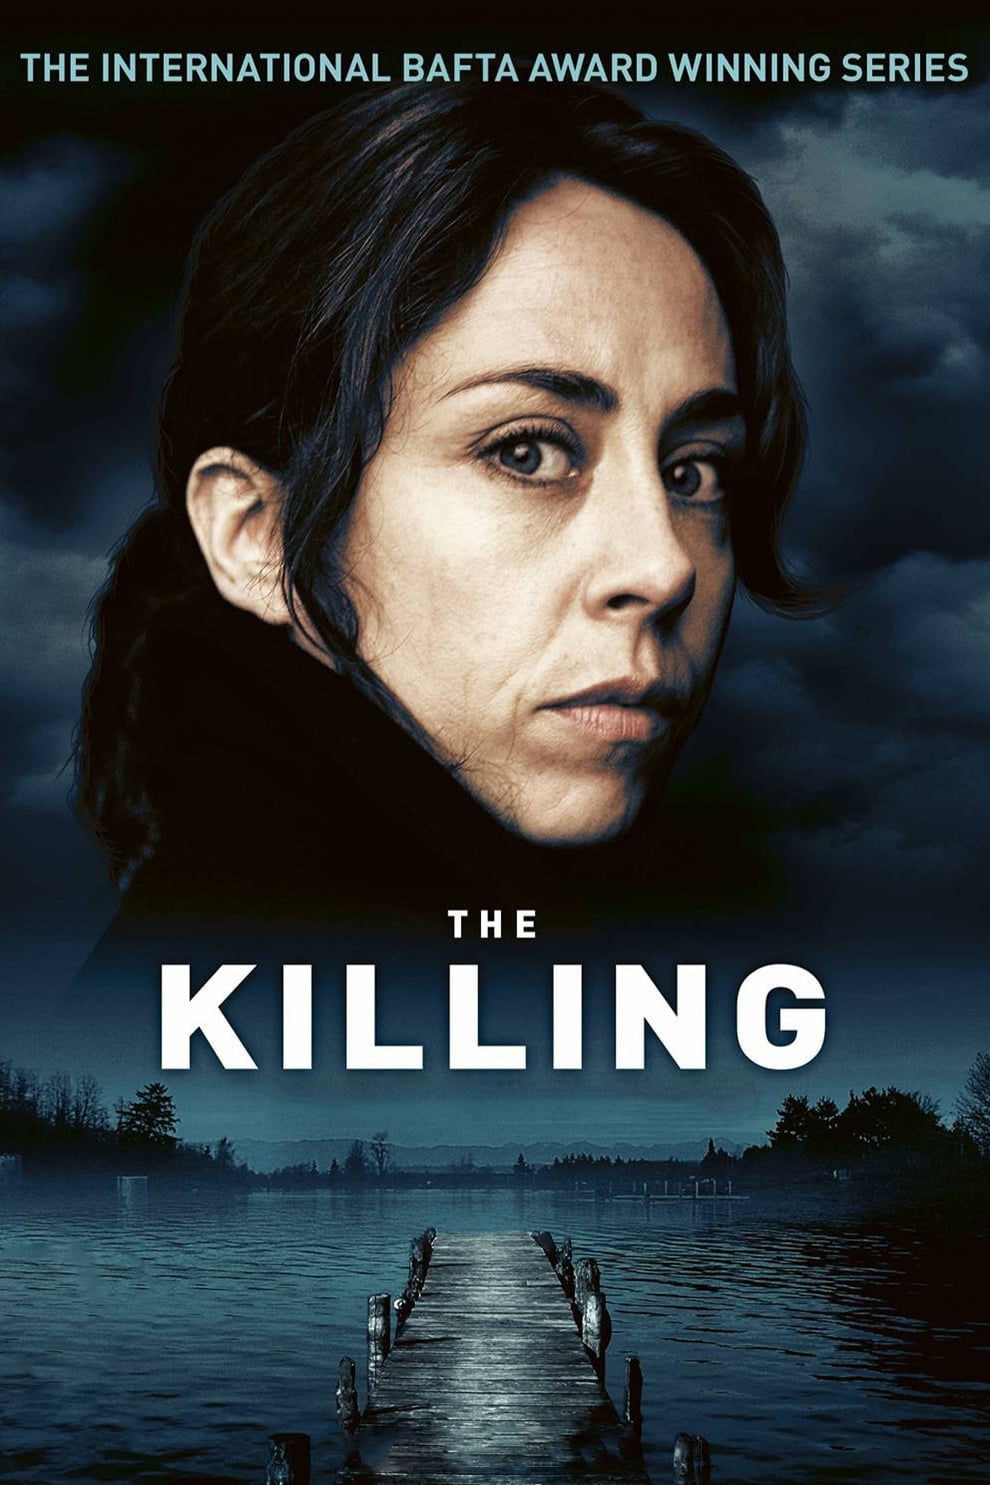 The Killing (2007)